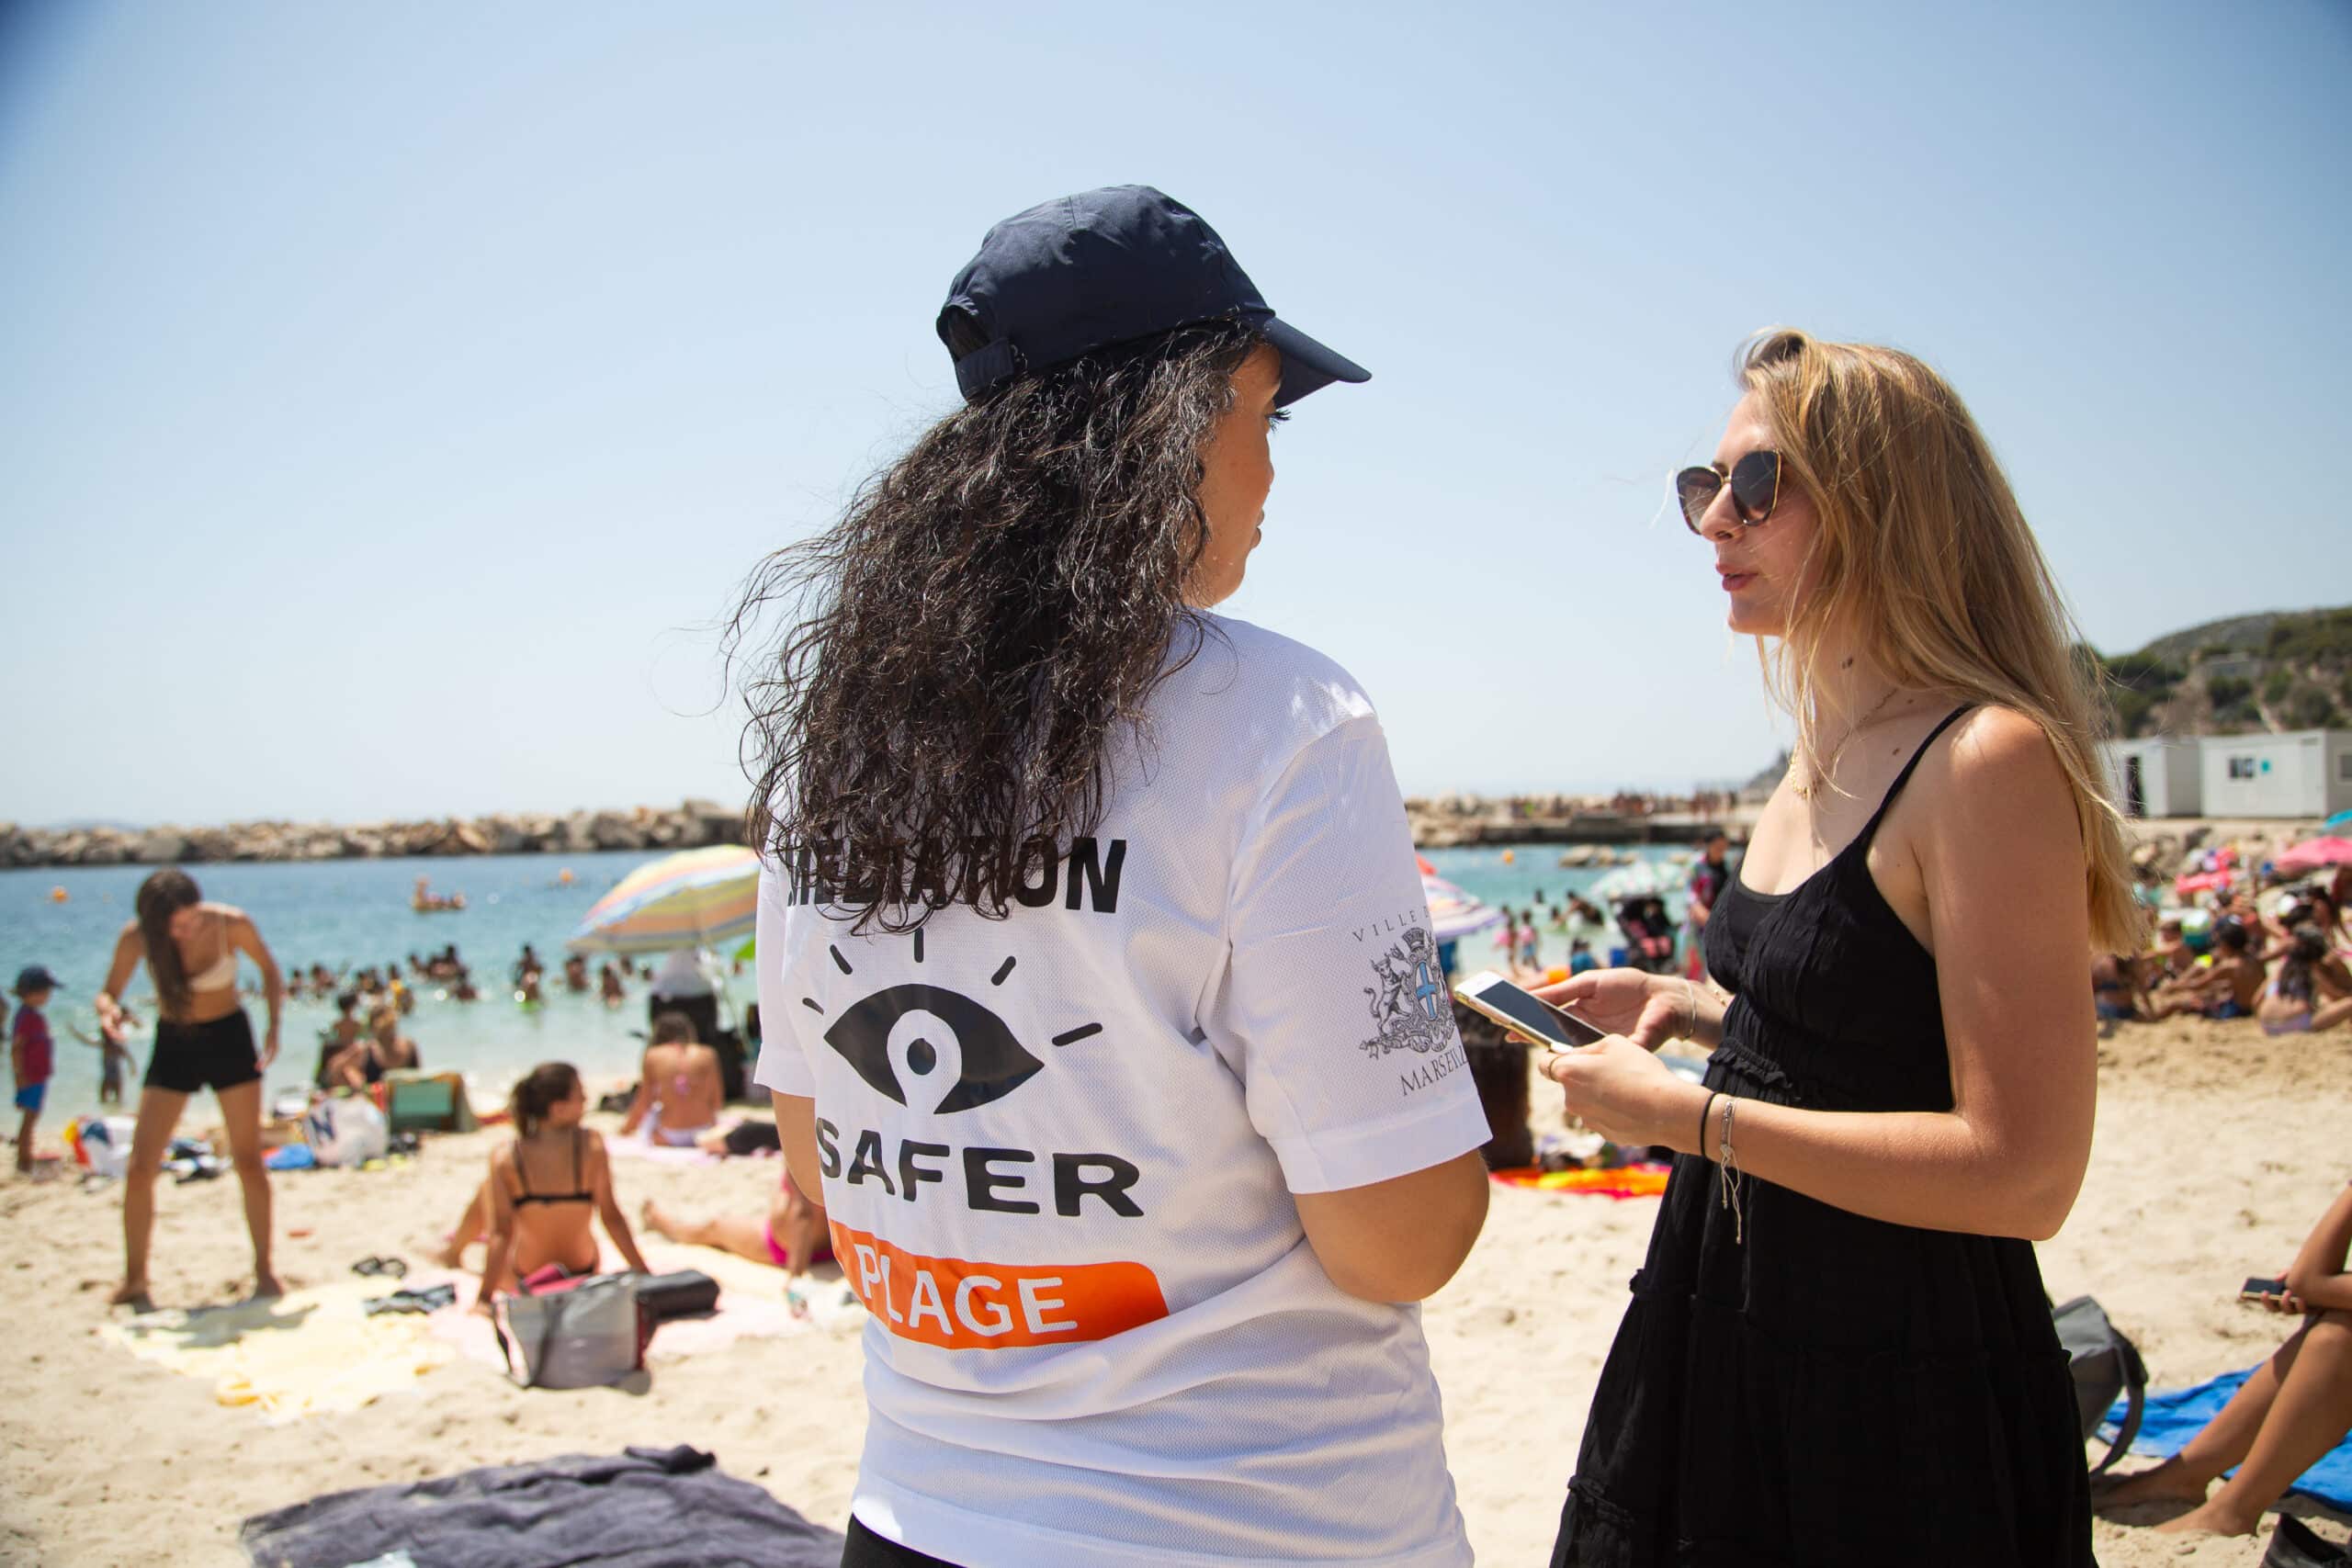 safer, Une application pour lutter contre le harcèlement sur les plages marseillaises, Made in Marseille